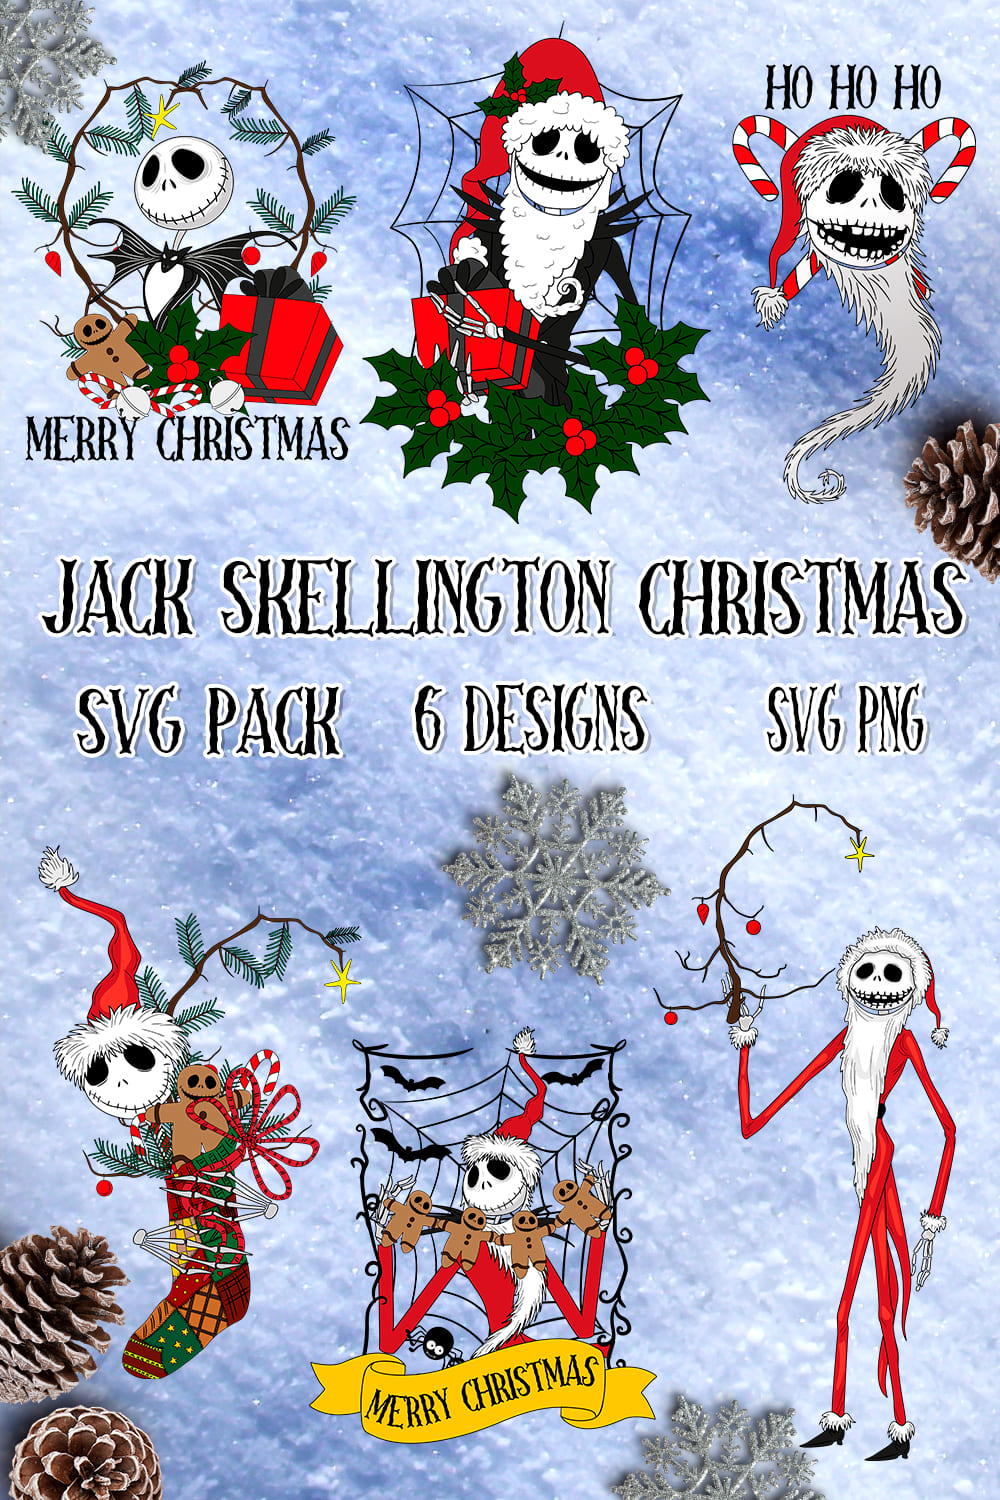 Jack Skellington Christmas SVG - pinterest image preview.